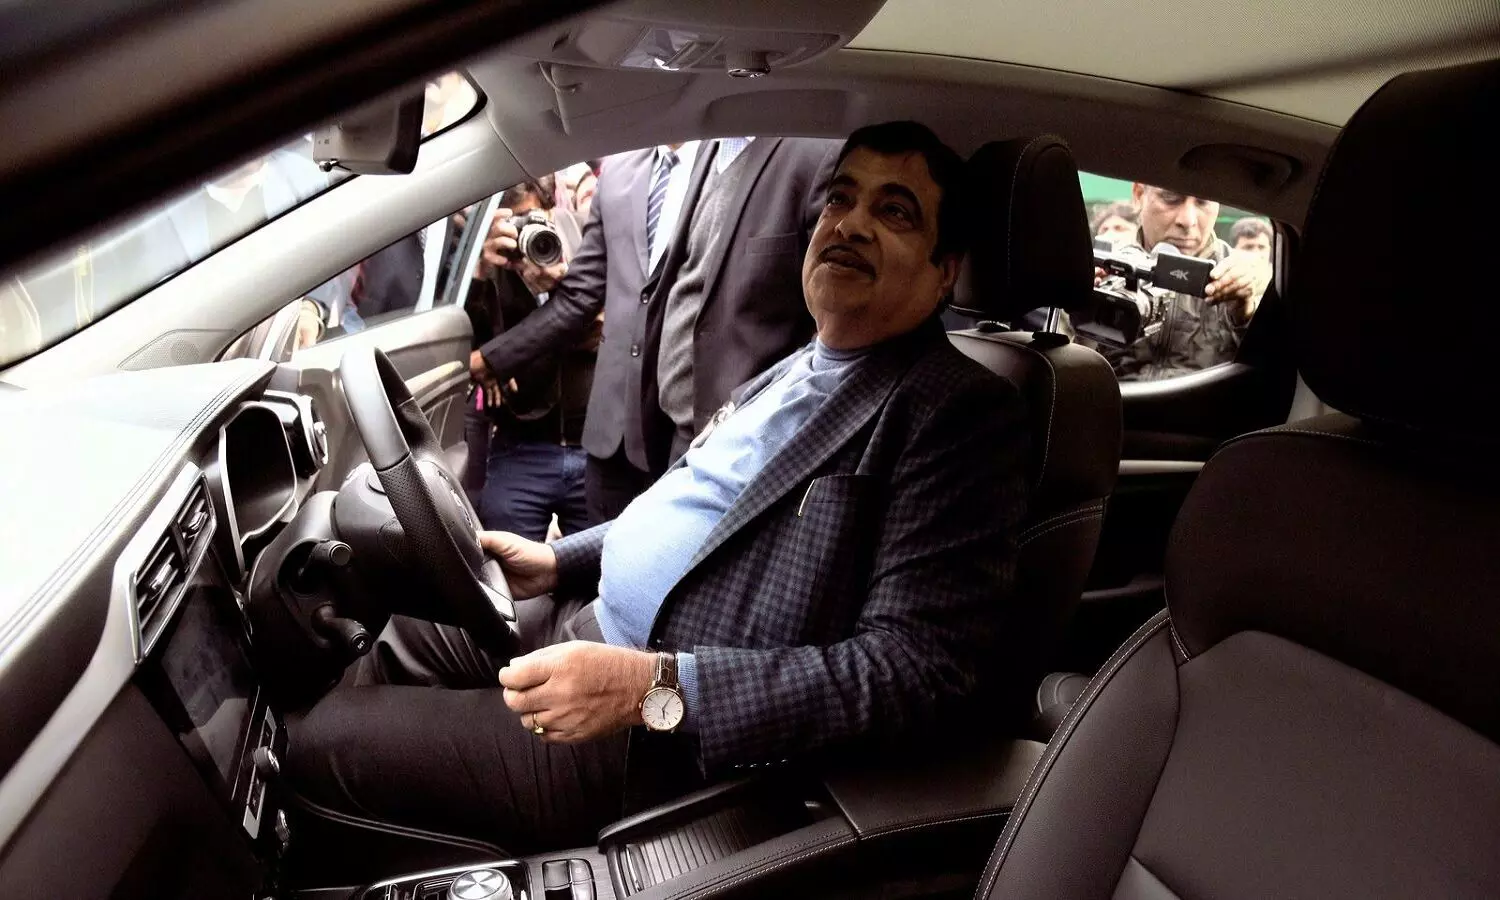 Nitin Gadkari On Mercedes Benz: नितिन गडकरी ने मर्सिडीज बेंज से कहा- मैं आपकी गाड़ी नहीं खरीद सकता